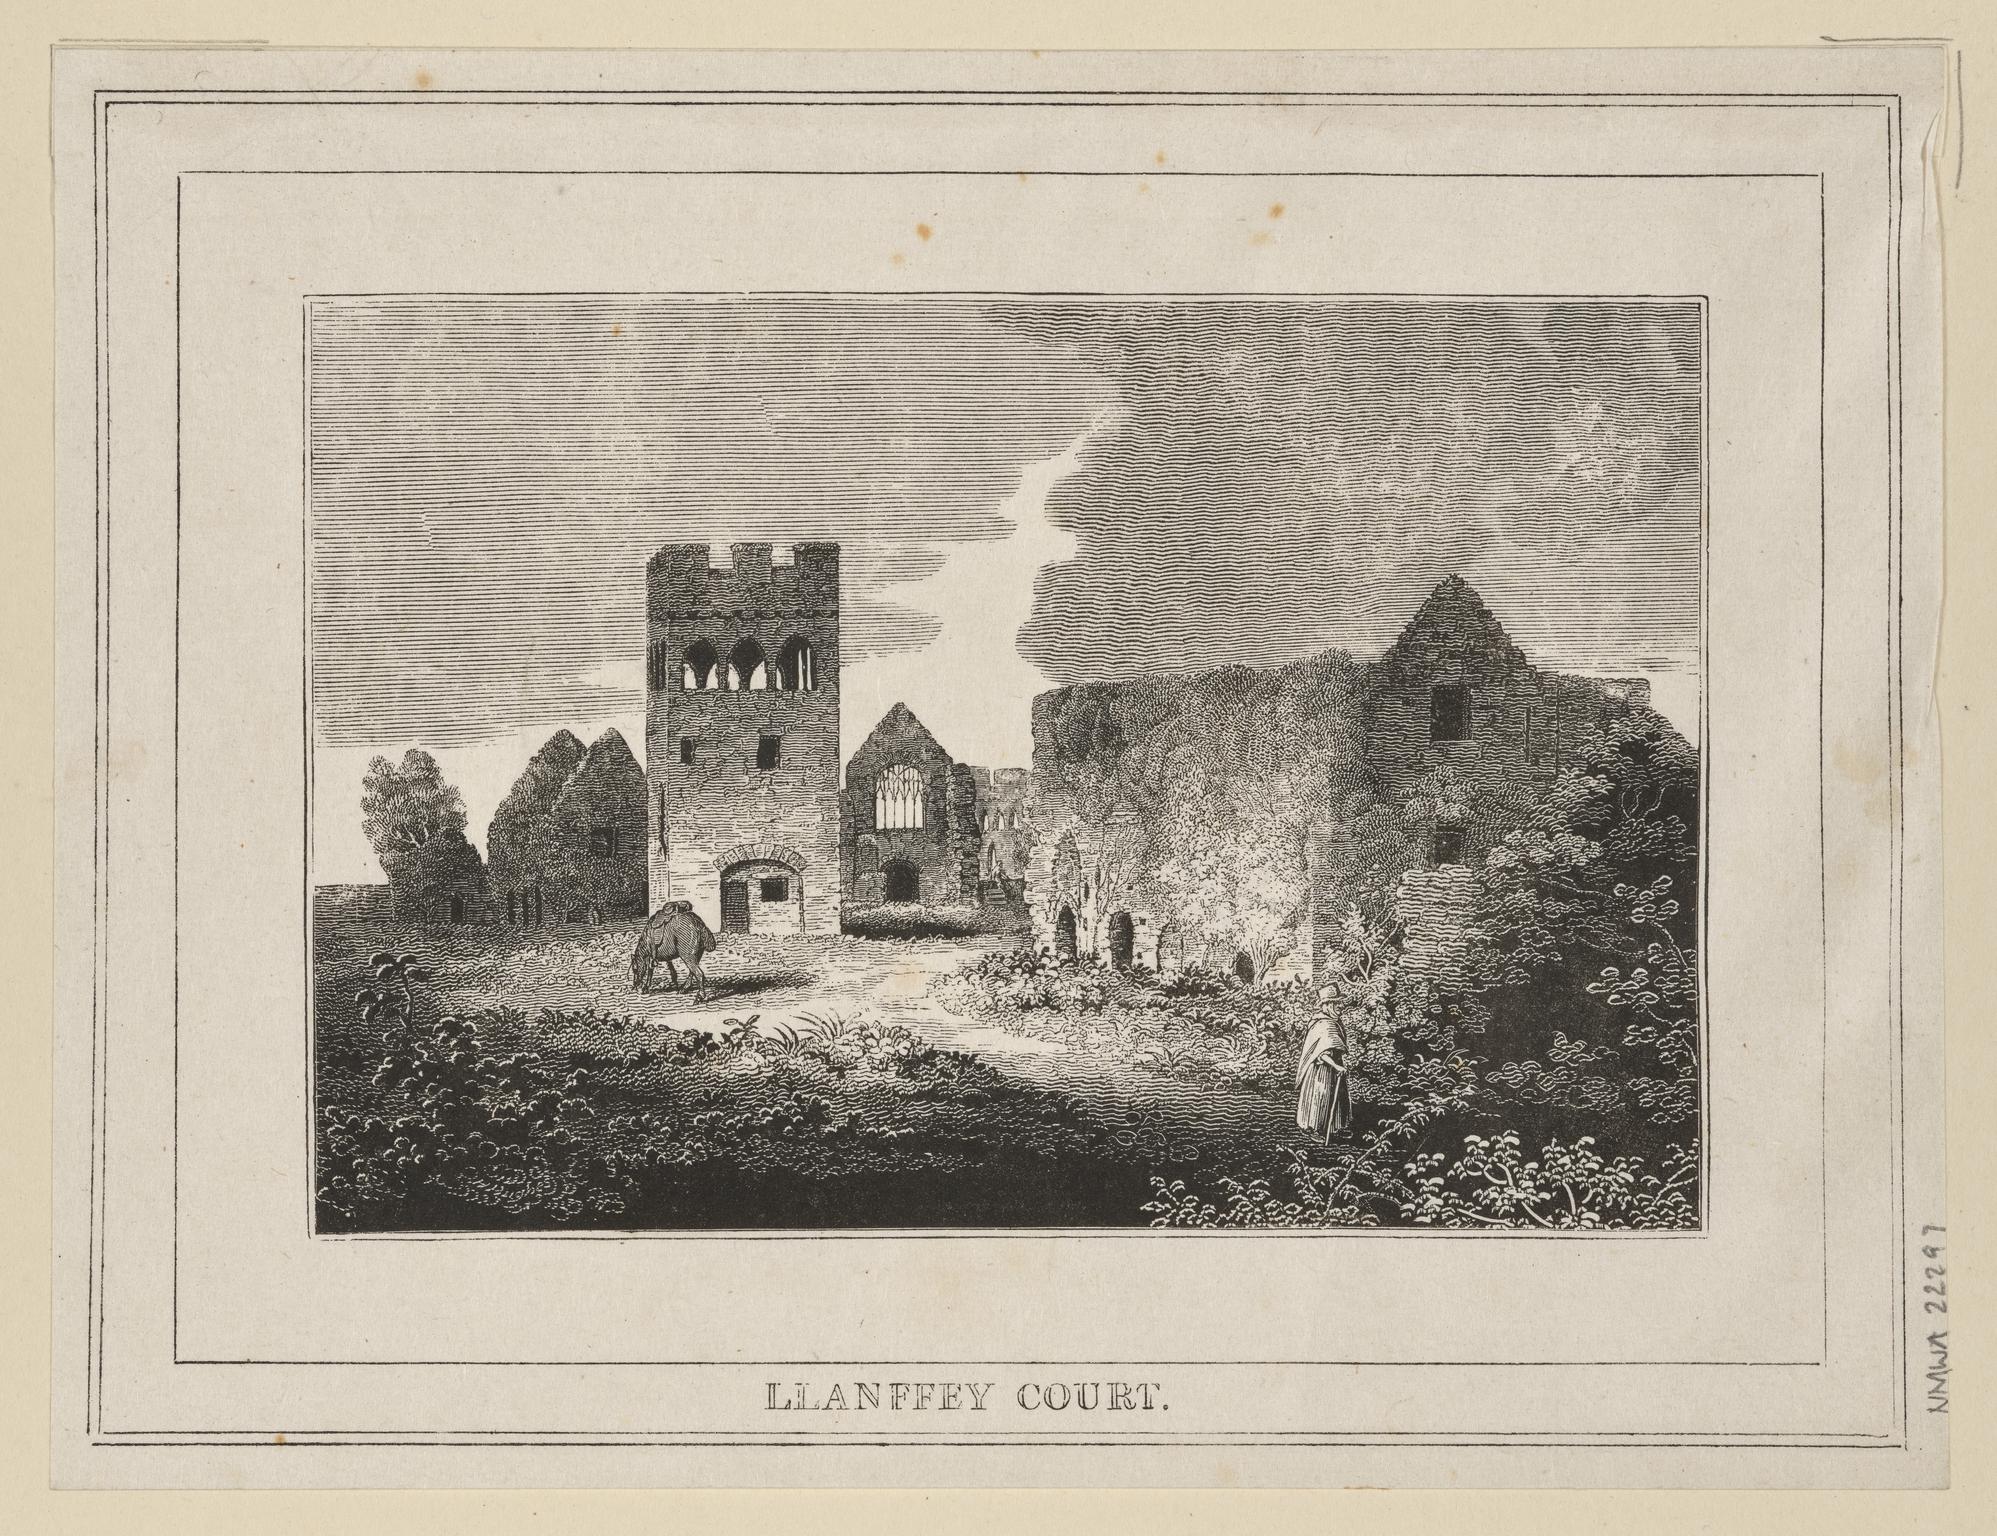 Llanffey Court